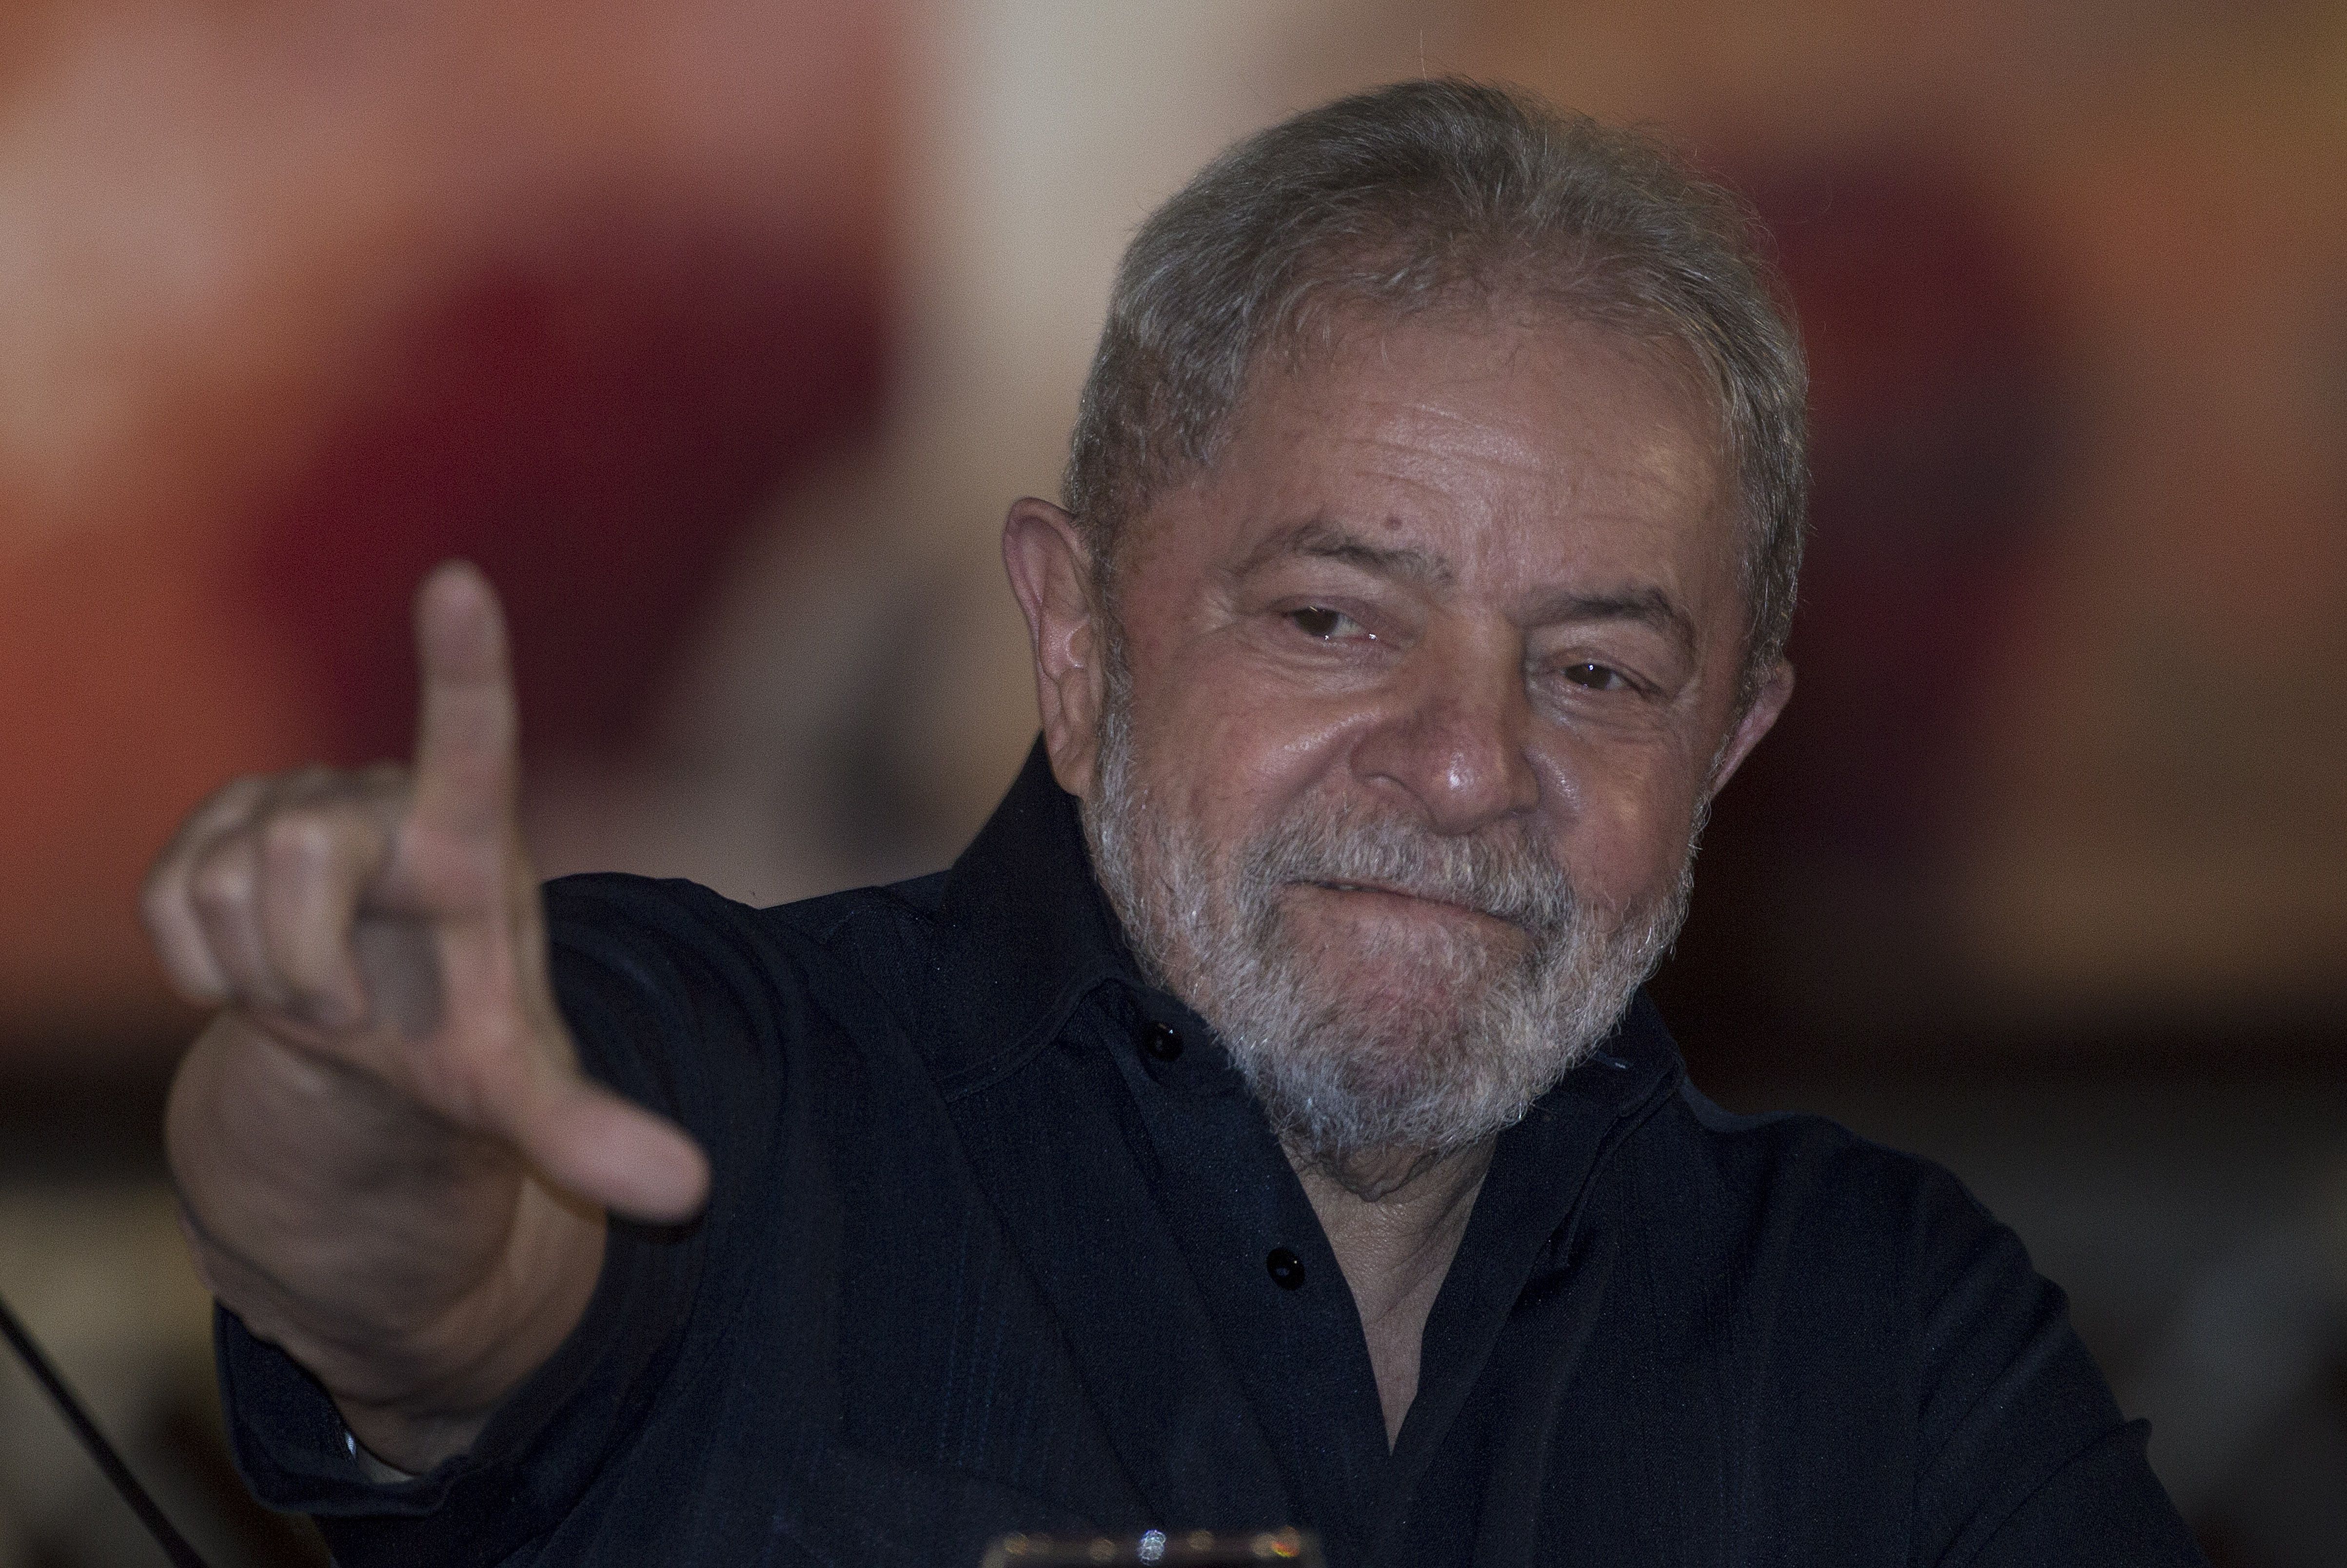 Lula se encuentra en prisión desde abril de 2018 por supuestos actos de corrupción, pero su defensa asegura que se trata de una persecución política.